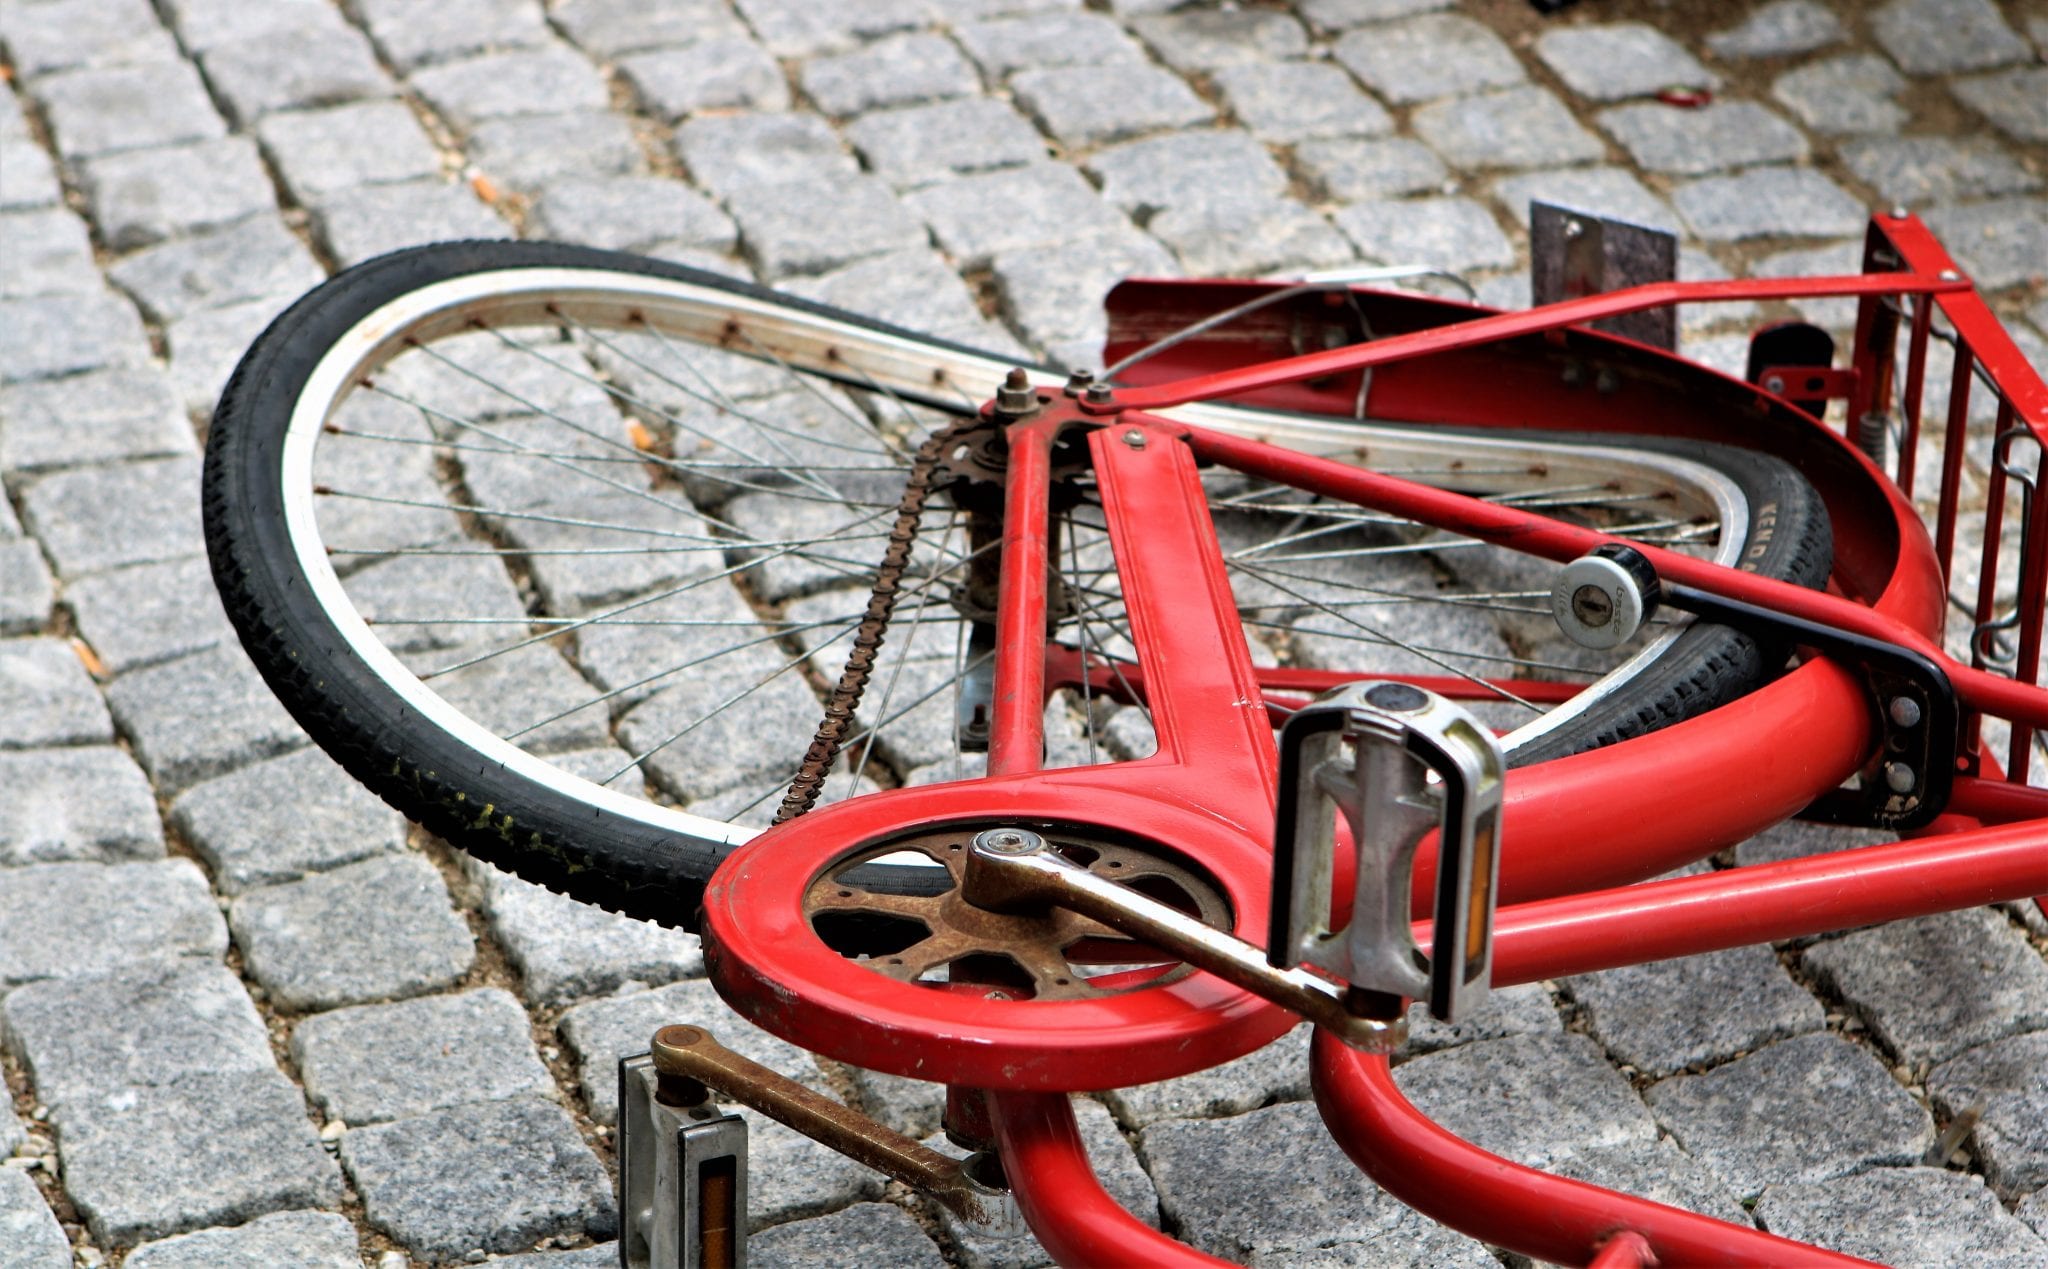 Afhentning af cykeldele på Borgervænget Genbrugsstation – Vesterbro